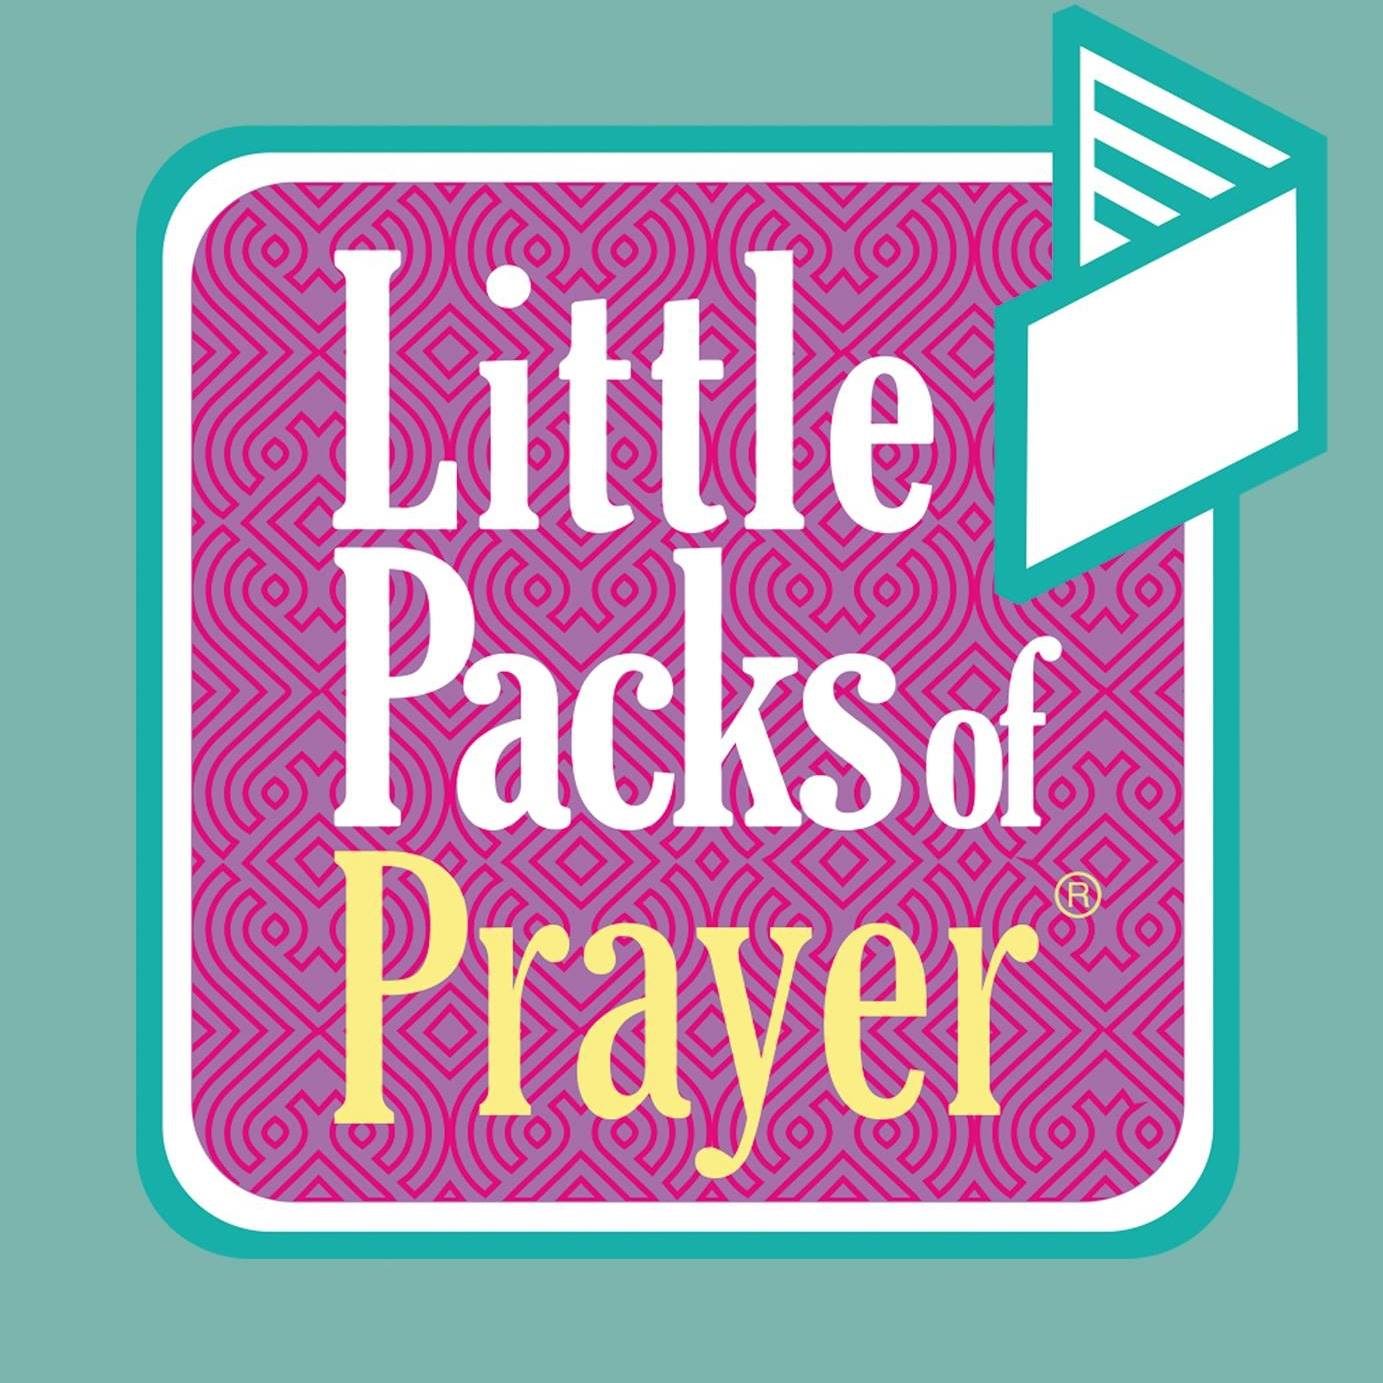 Little packs of Prayer